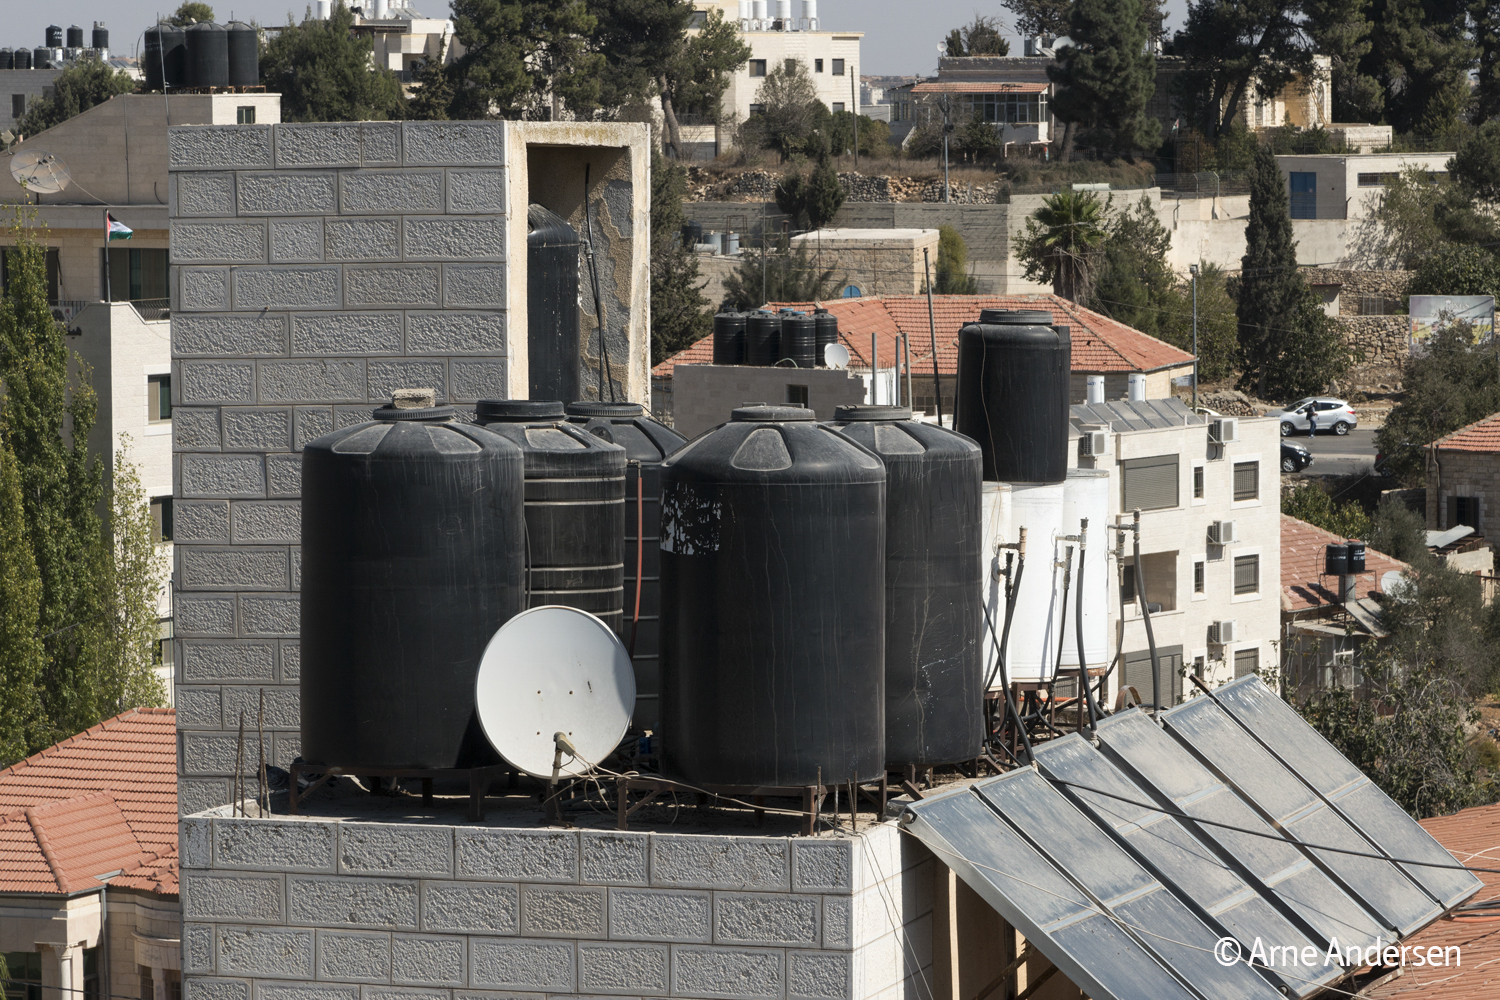 Da die Israelis immer wieder für Palästinenser die Wasserversorgung blockieren, erkennt man palästinensische Häuser an den schwarzen Wassertanks auf den Dächern